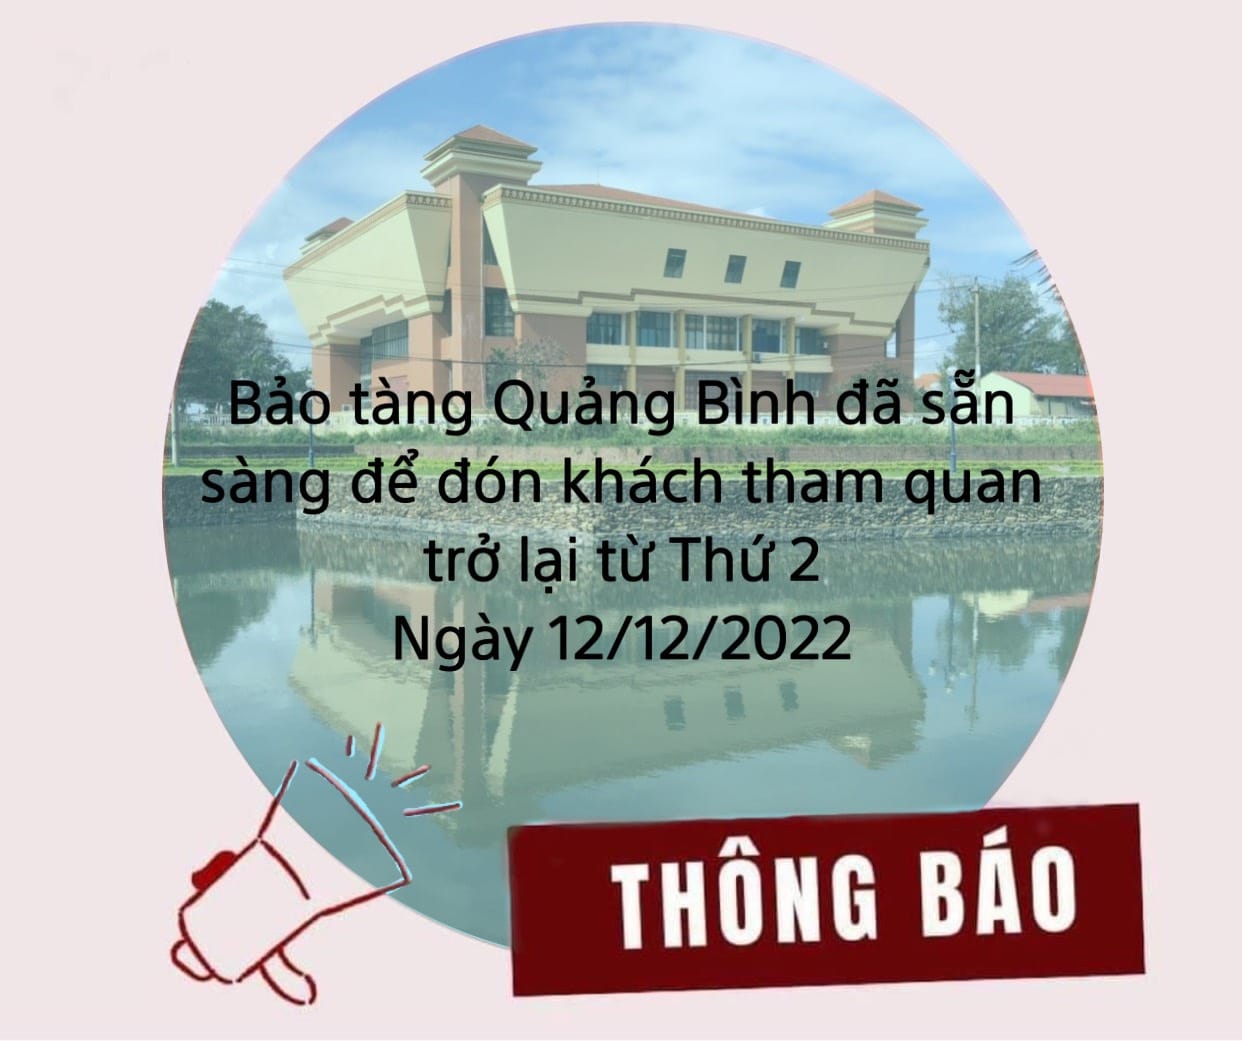 Bảo tàng Quảng Bình đón khách thăm quan trở lại